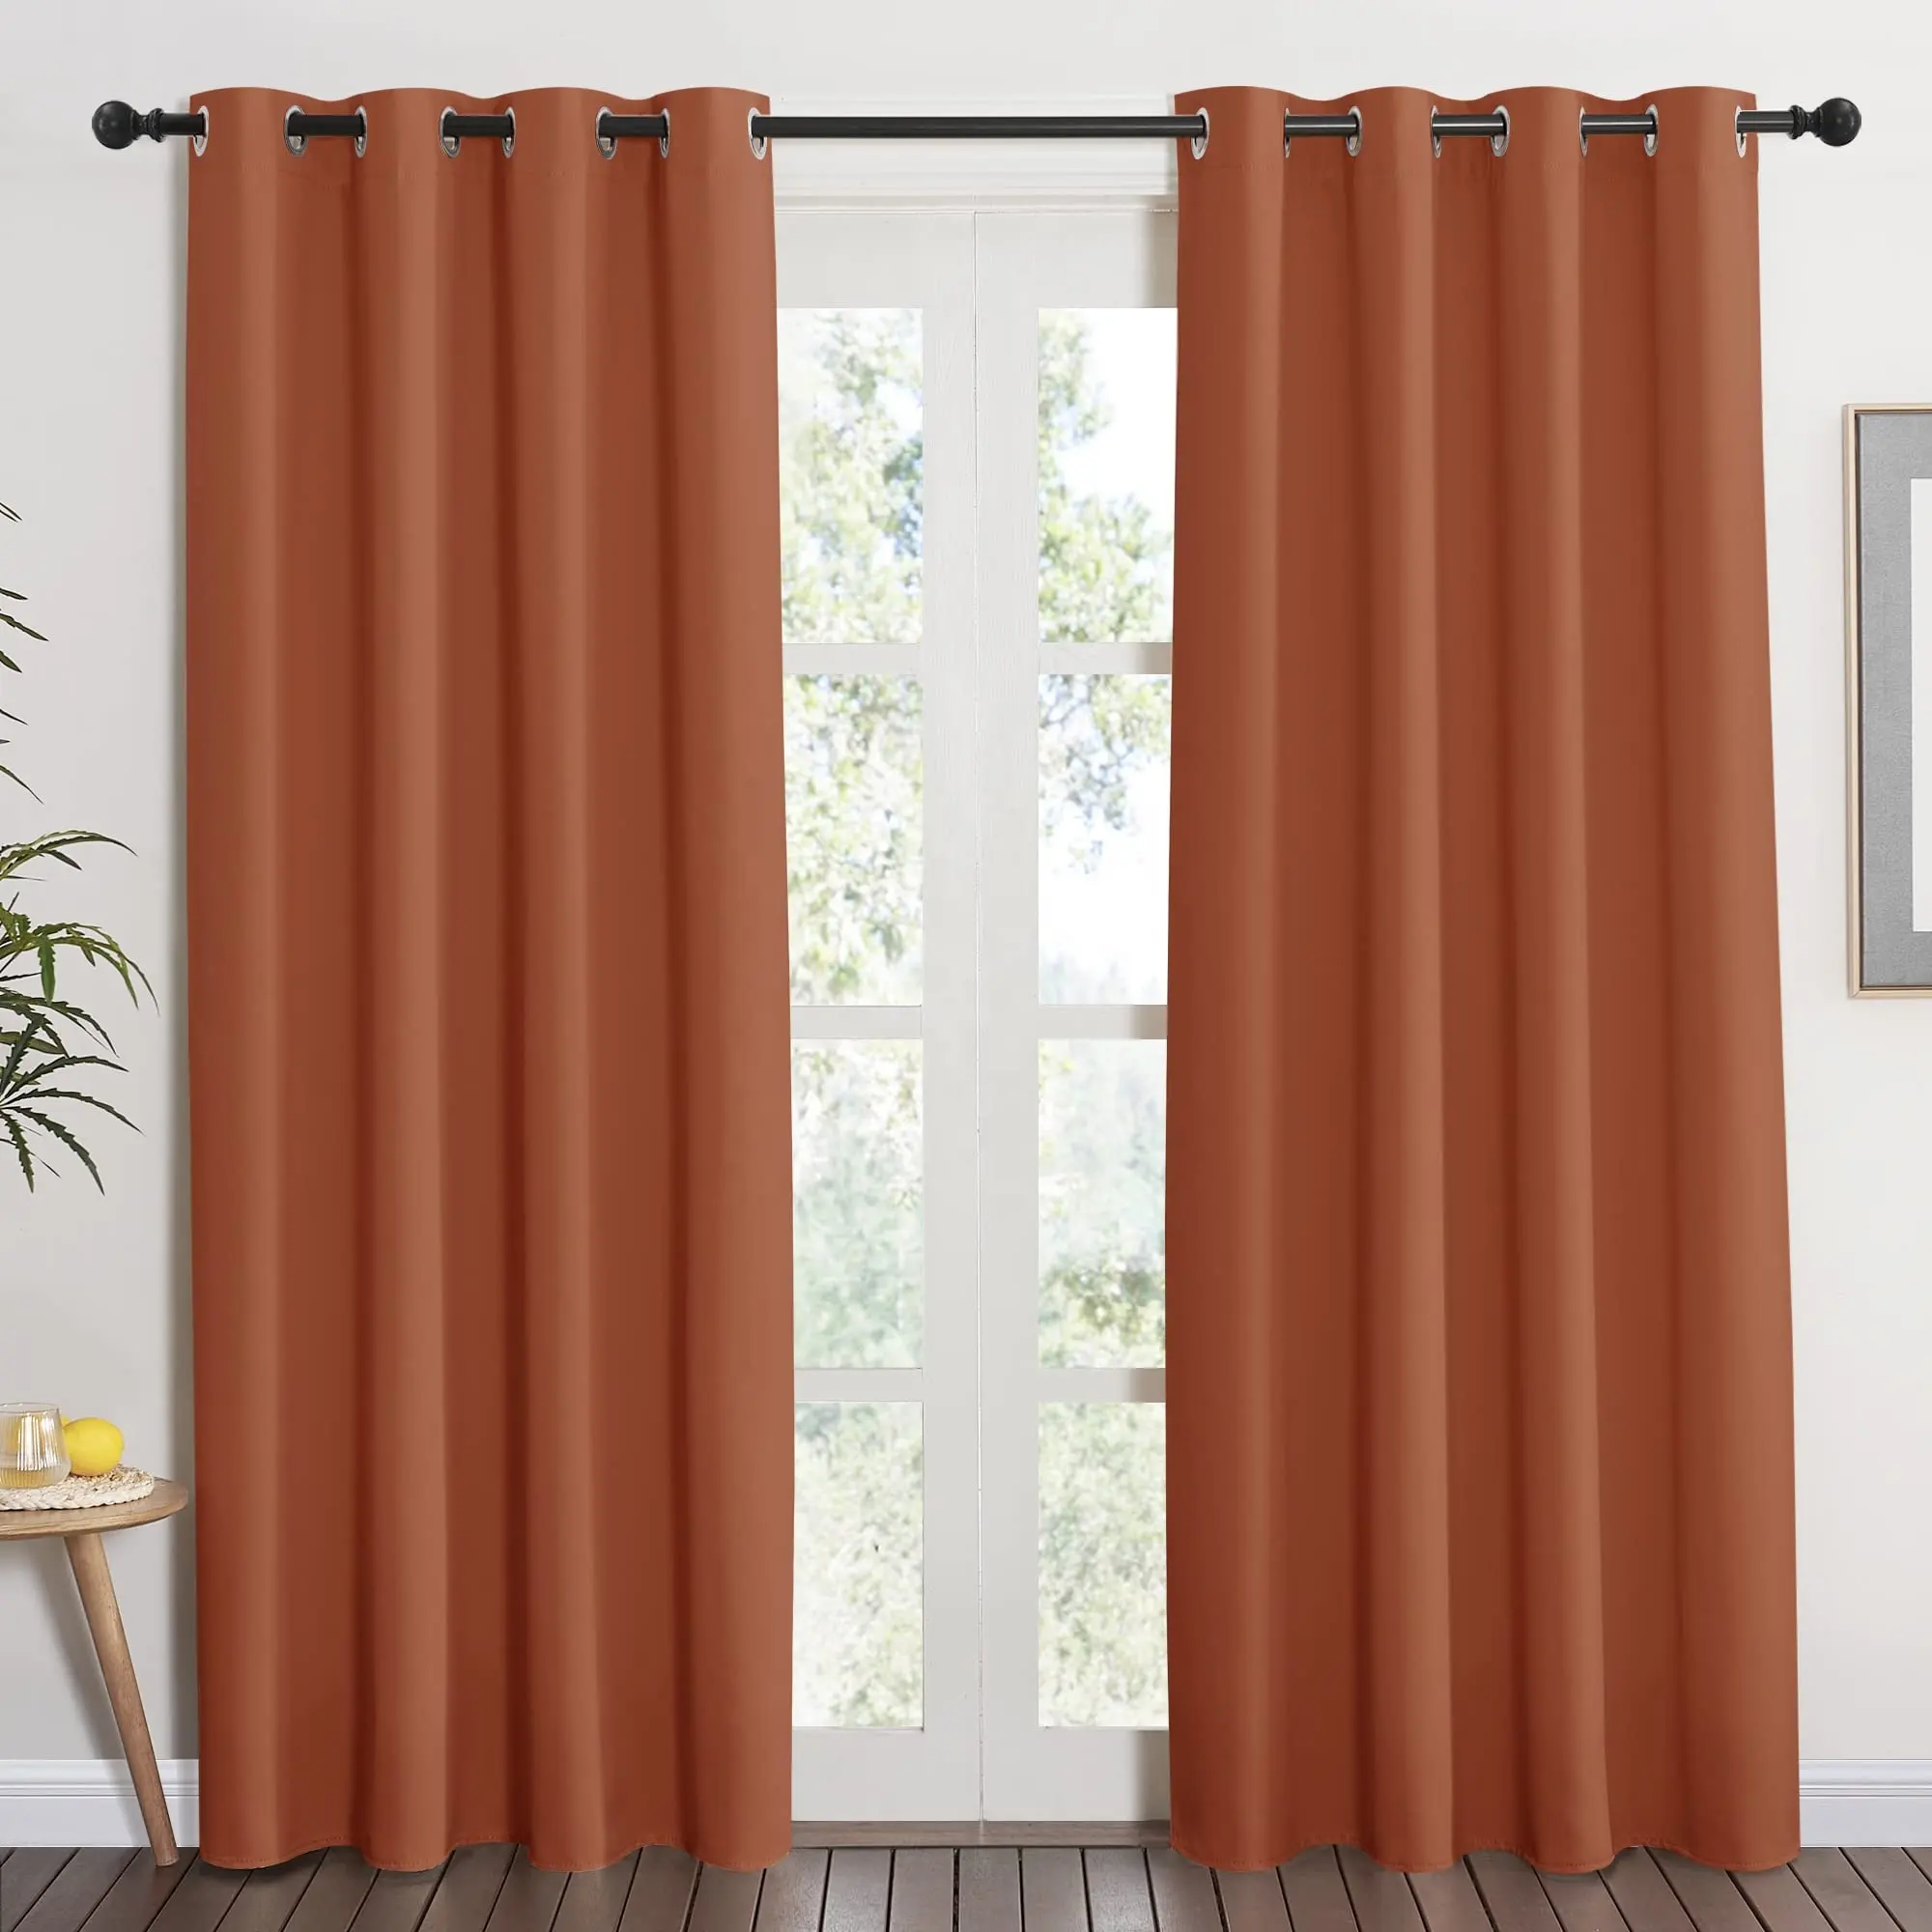 Bindi, diseños de cortinas de Color naranja quemado, tratamiento de ventana de bloqueo de luz de oscurecimiento de habitación para sala de estar